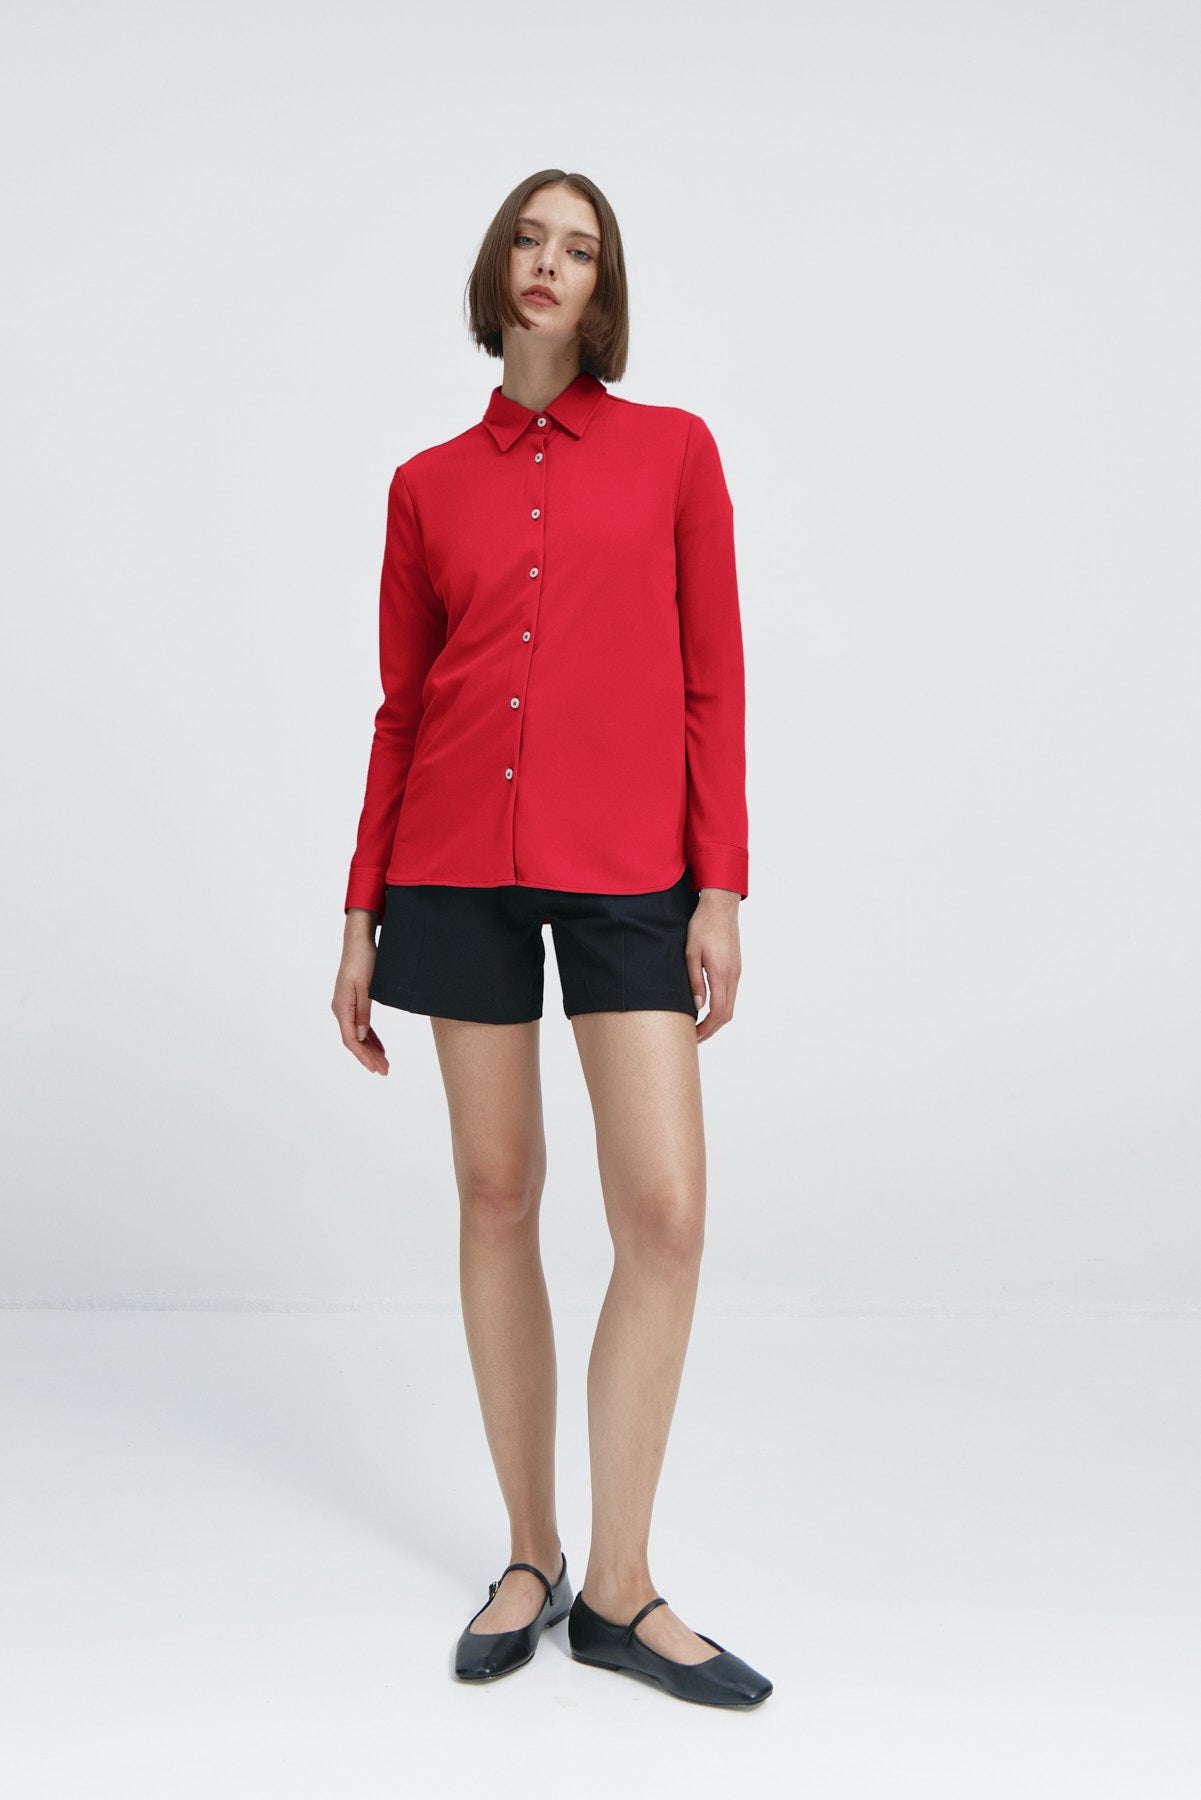 Camisa rojo atlanta oversize de Sepiia, elegante y resistente a manchas y arrugas. Foto cuerpo entero